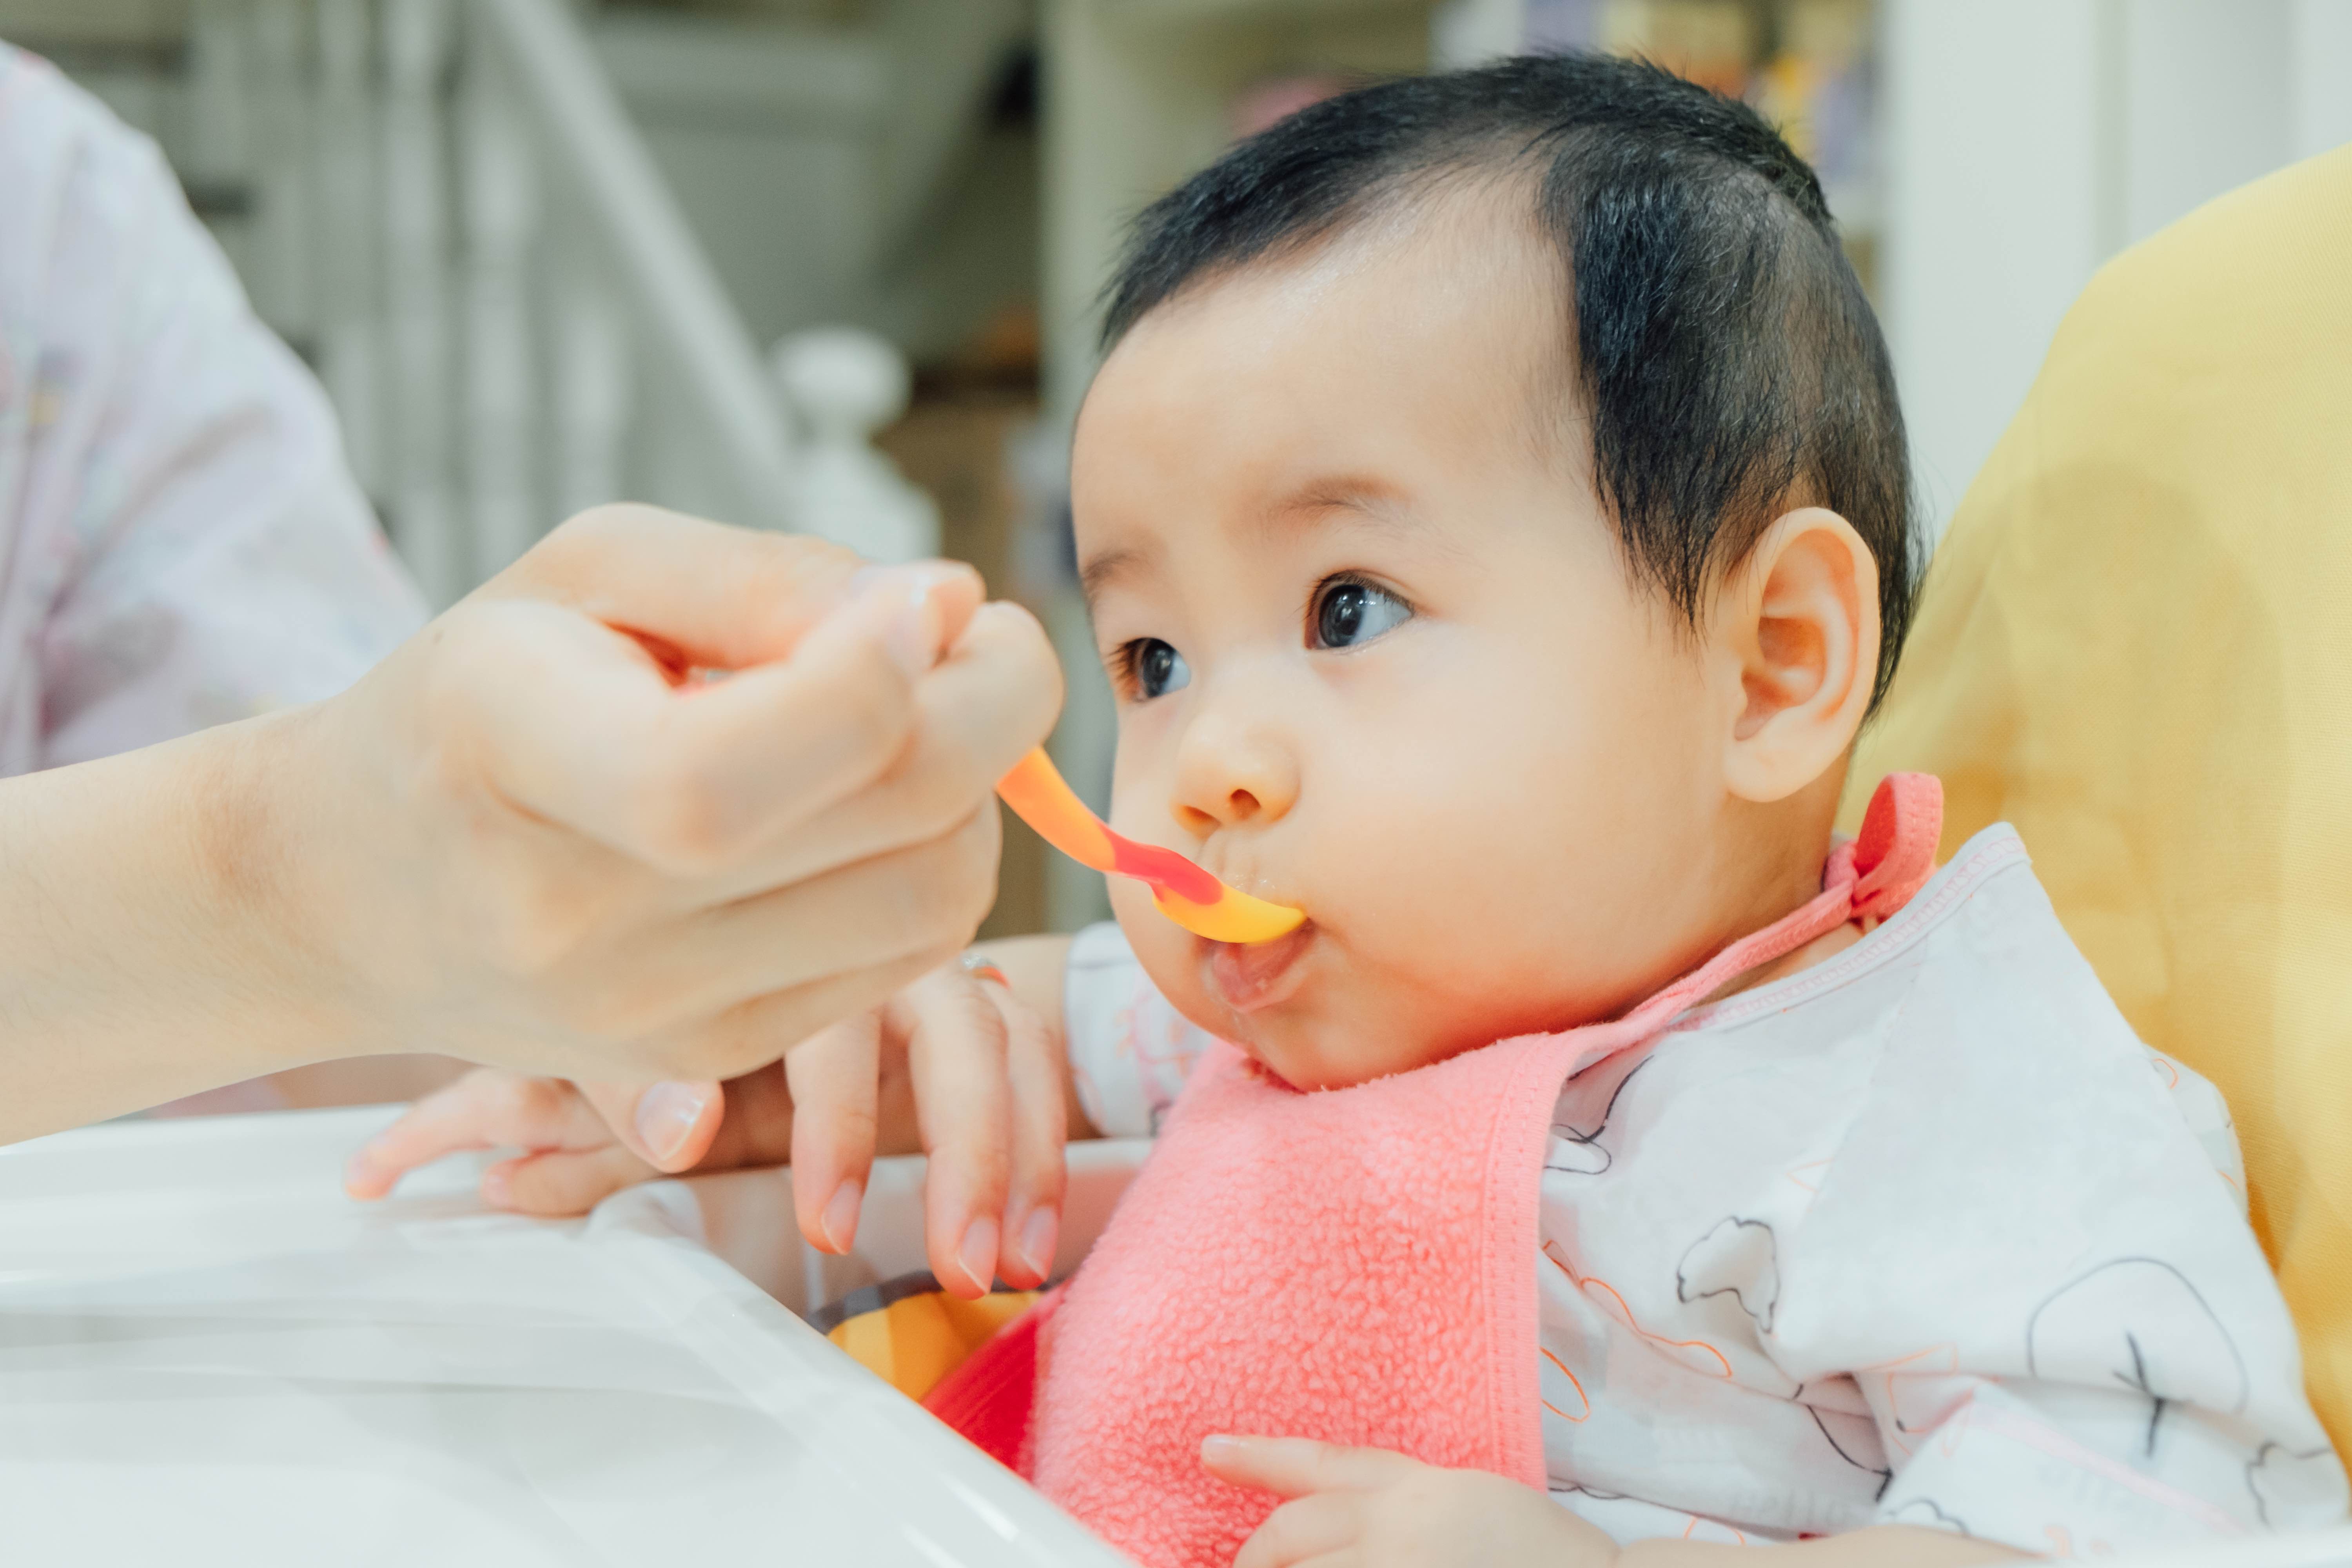 Jadual Makan Bayi 6 Bulan / Jadual Pemakanan Bayi 6 Bulan Jumlah Dan